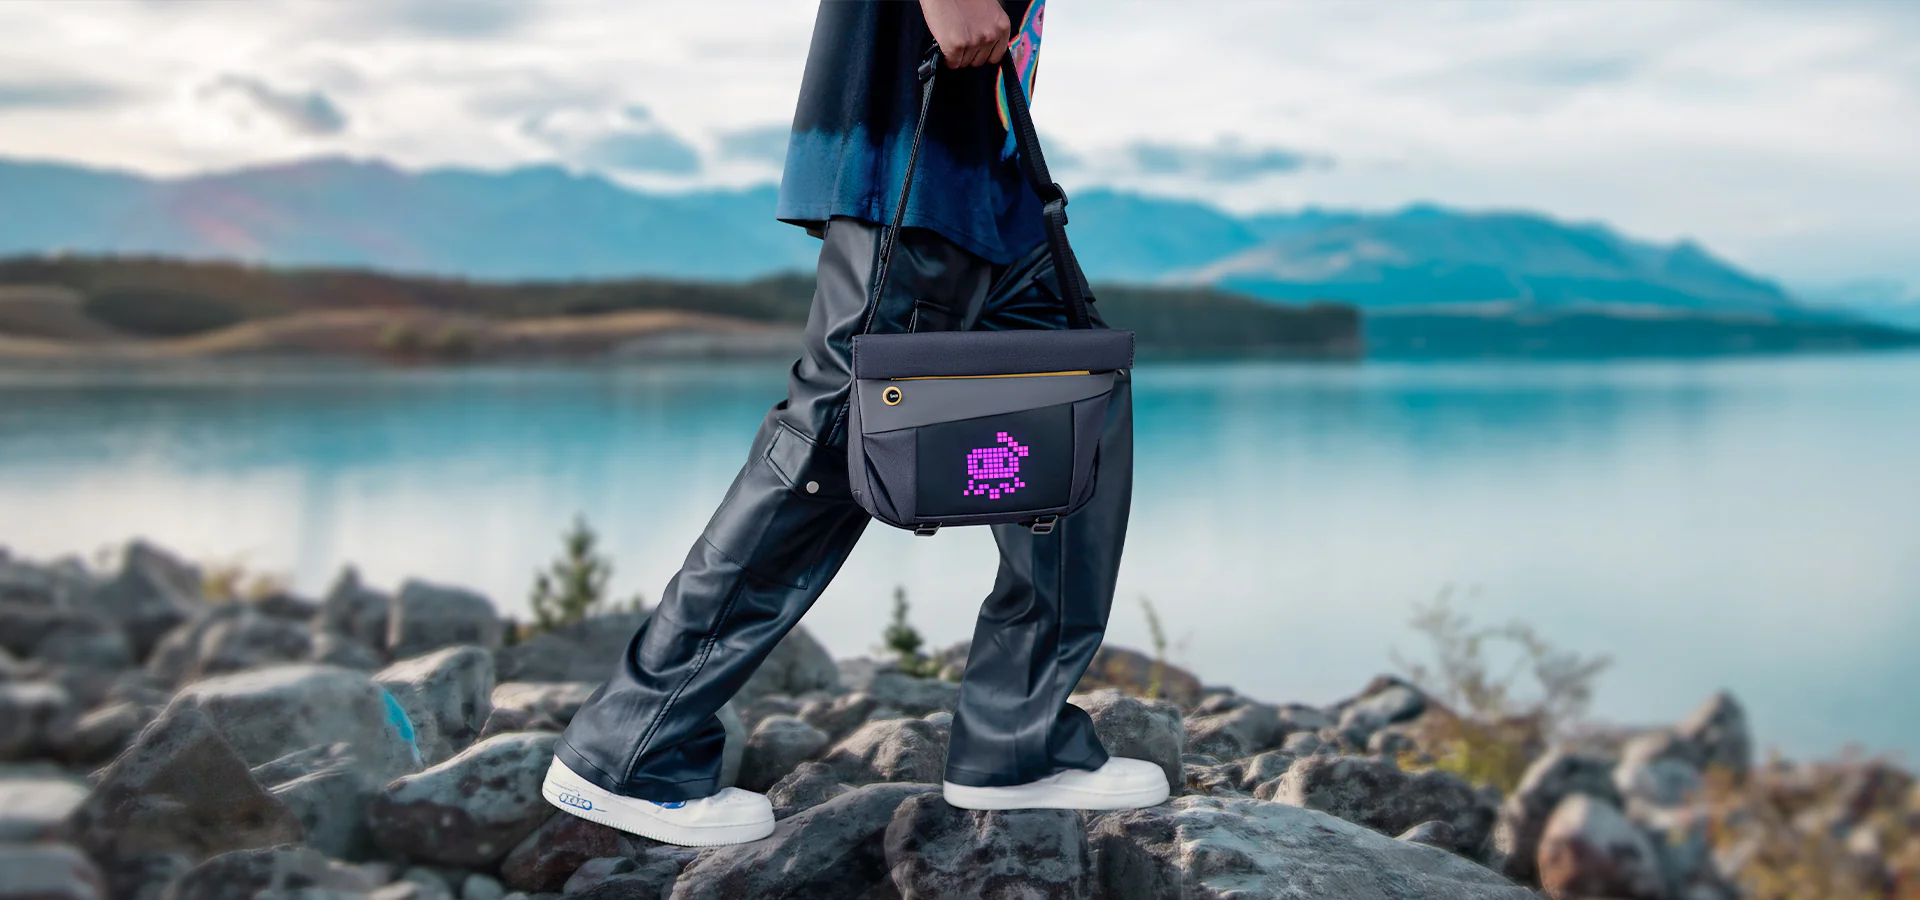 Divoom Pixoo Sling Bag V Global Version - Innovative Smart LED